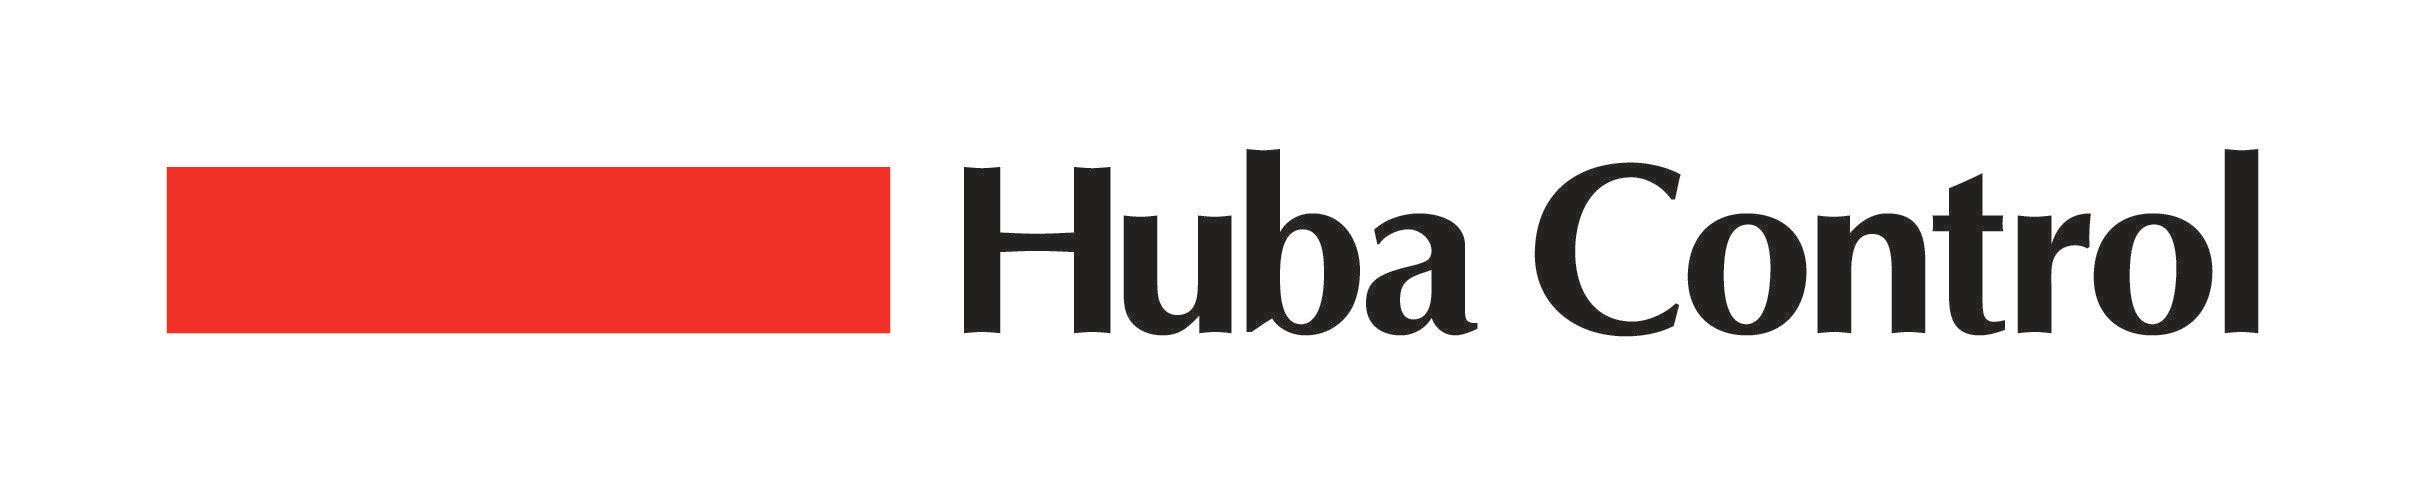 Control Logo - Huba Control Logo - Huba Control